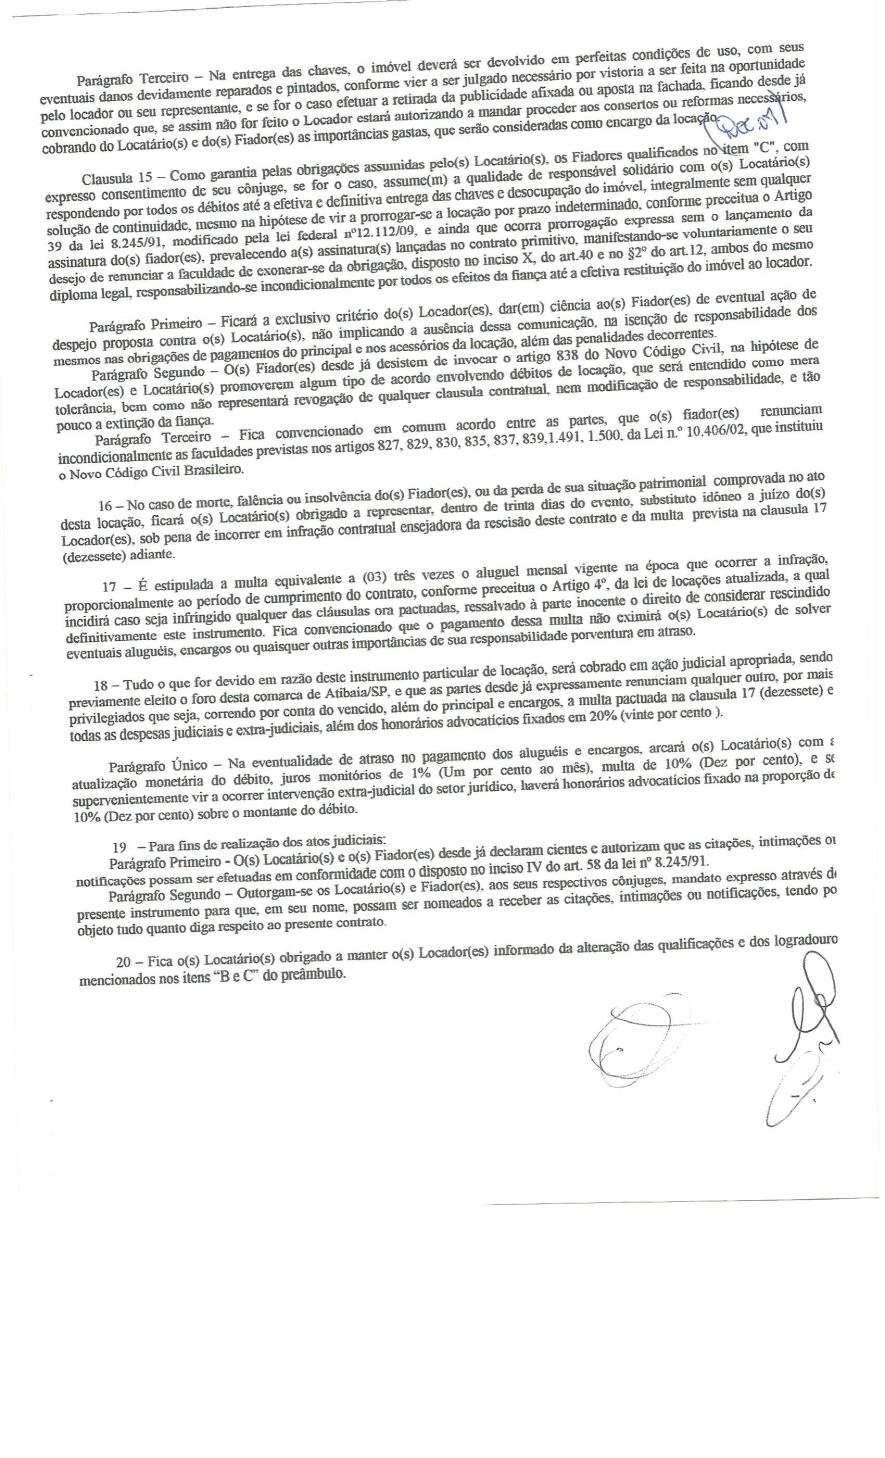 fls. 13 Este documento é cópia do original, assinado digitalmente por MITIKO MARCIA URASHIMA YAMAMOTO e Tribunal de Justica Sao Paulo, protocolado em 05/05/2014 às 18:55, sob o número